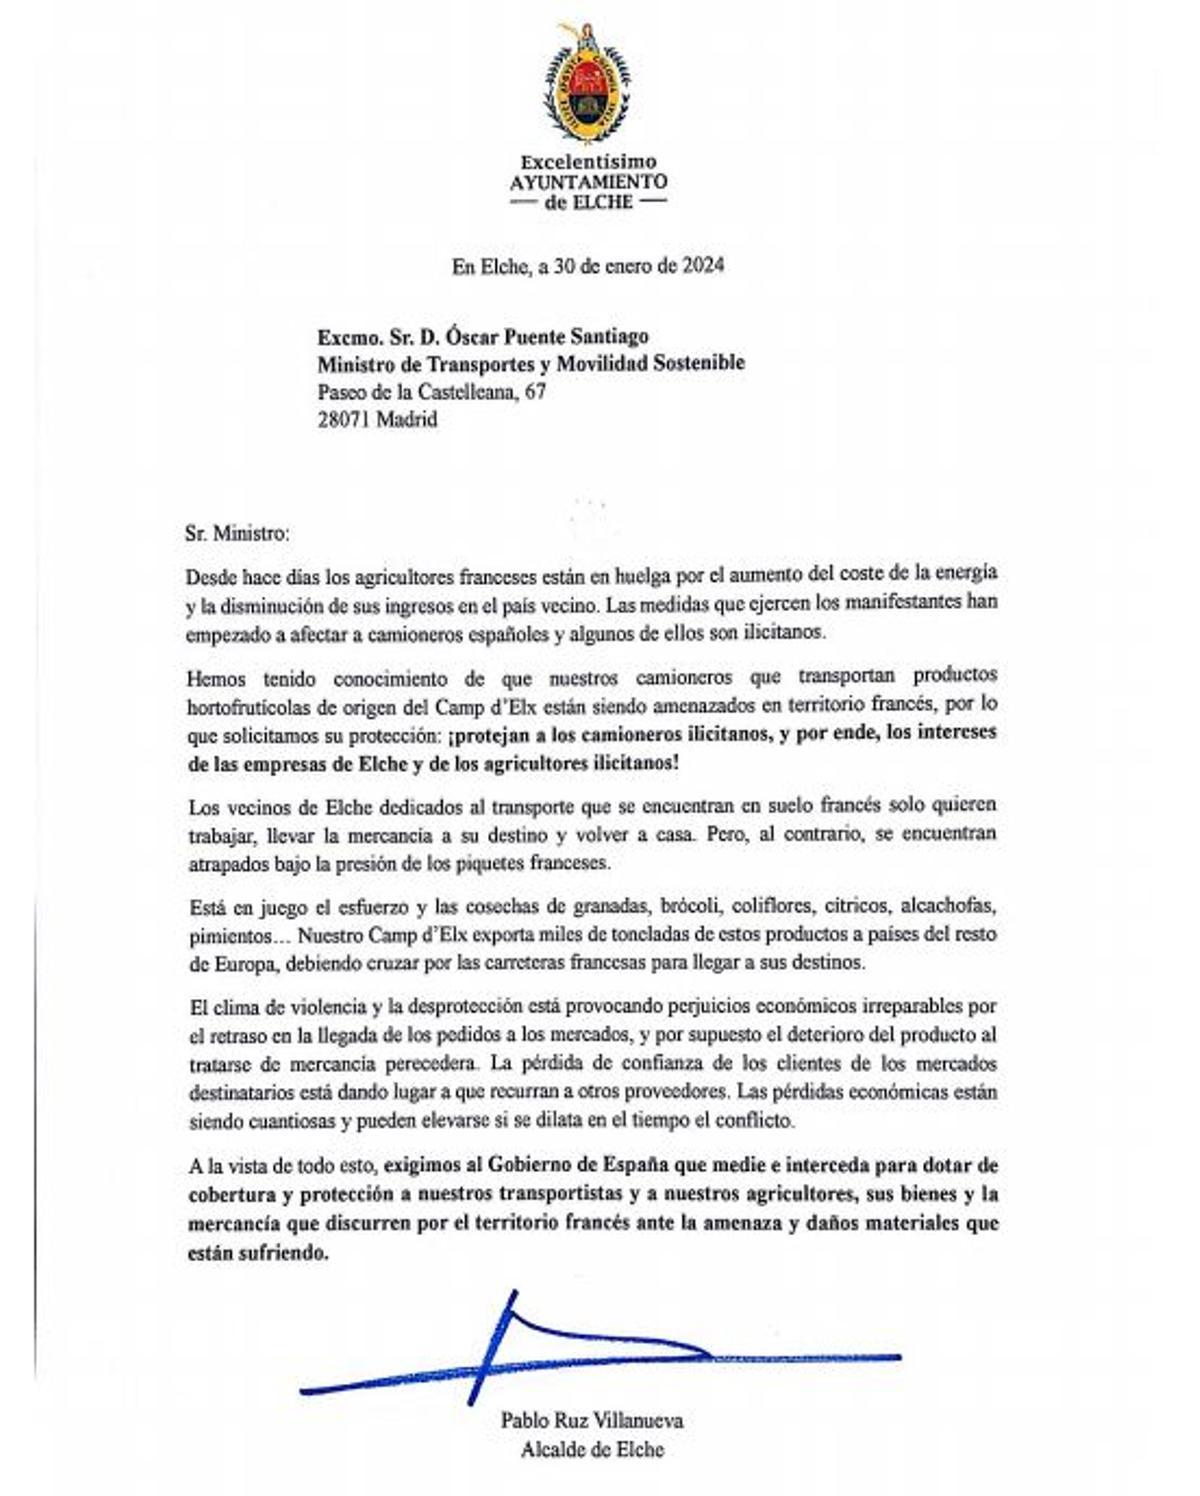 Carta enviada por el alcalde al ministro Óscar Puente